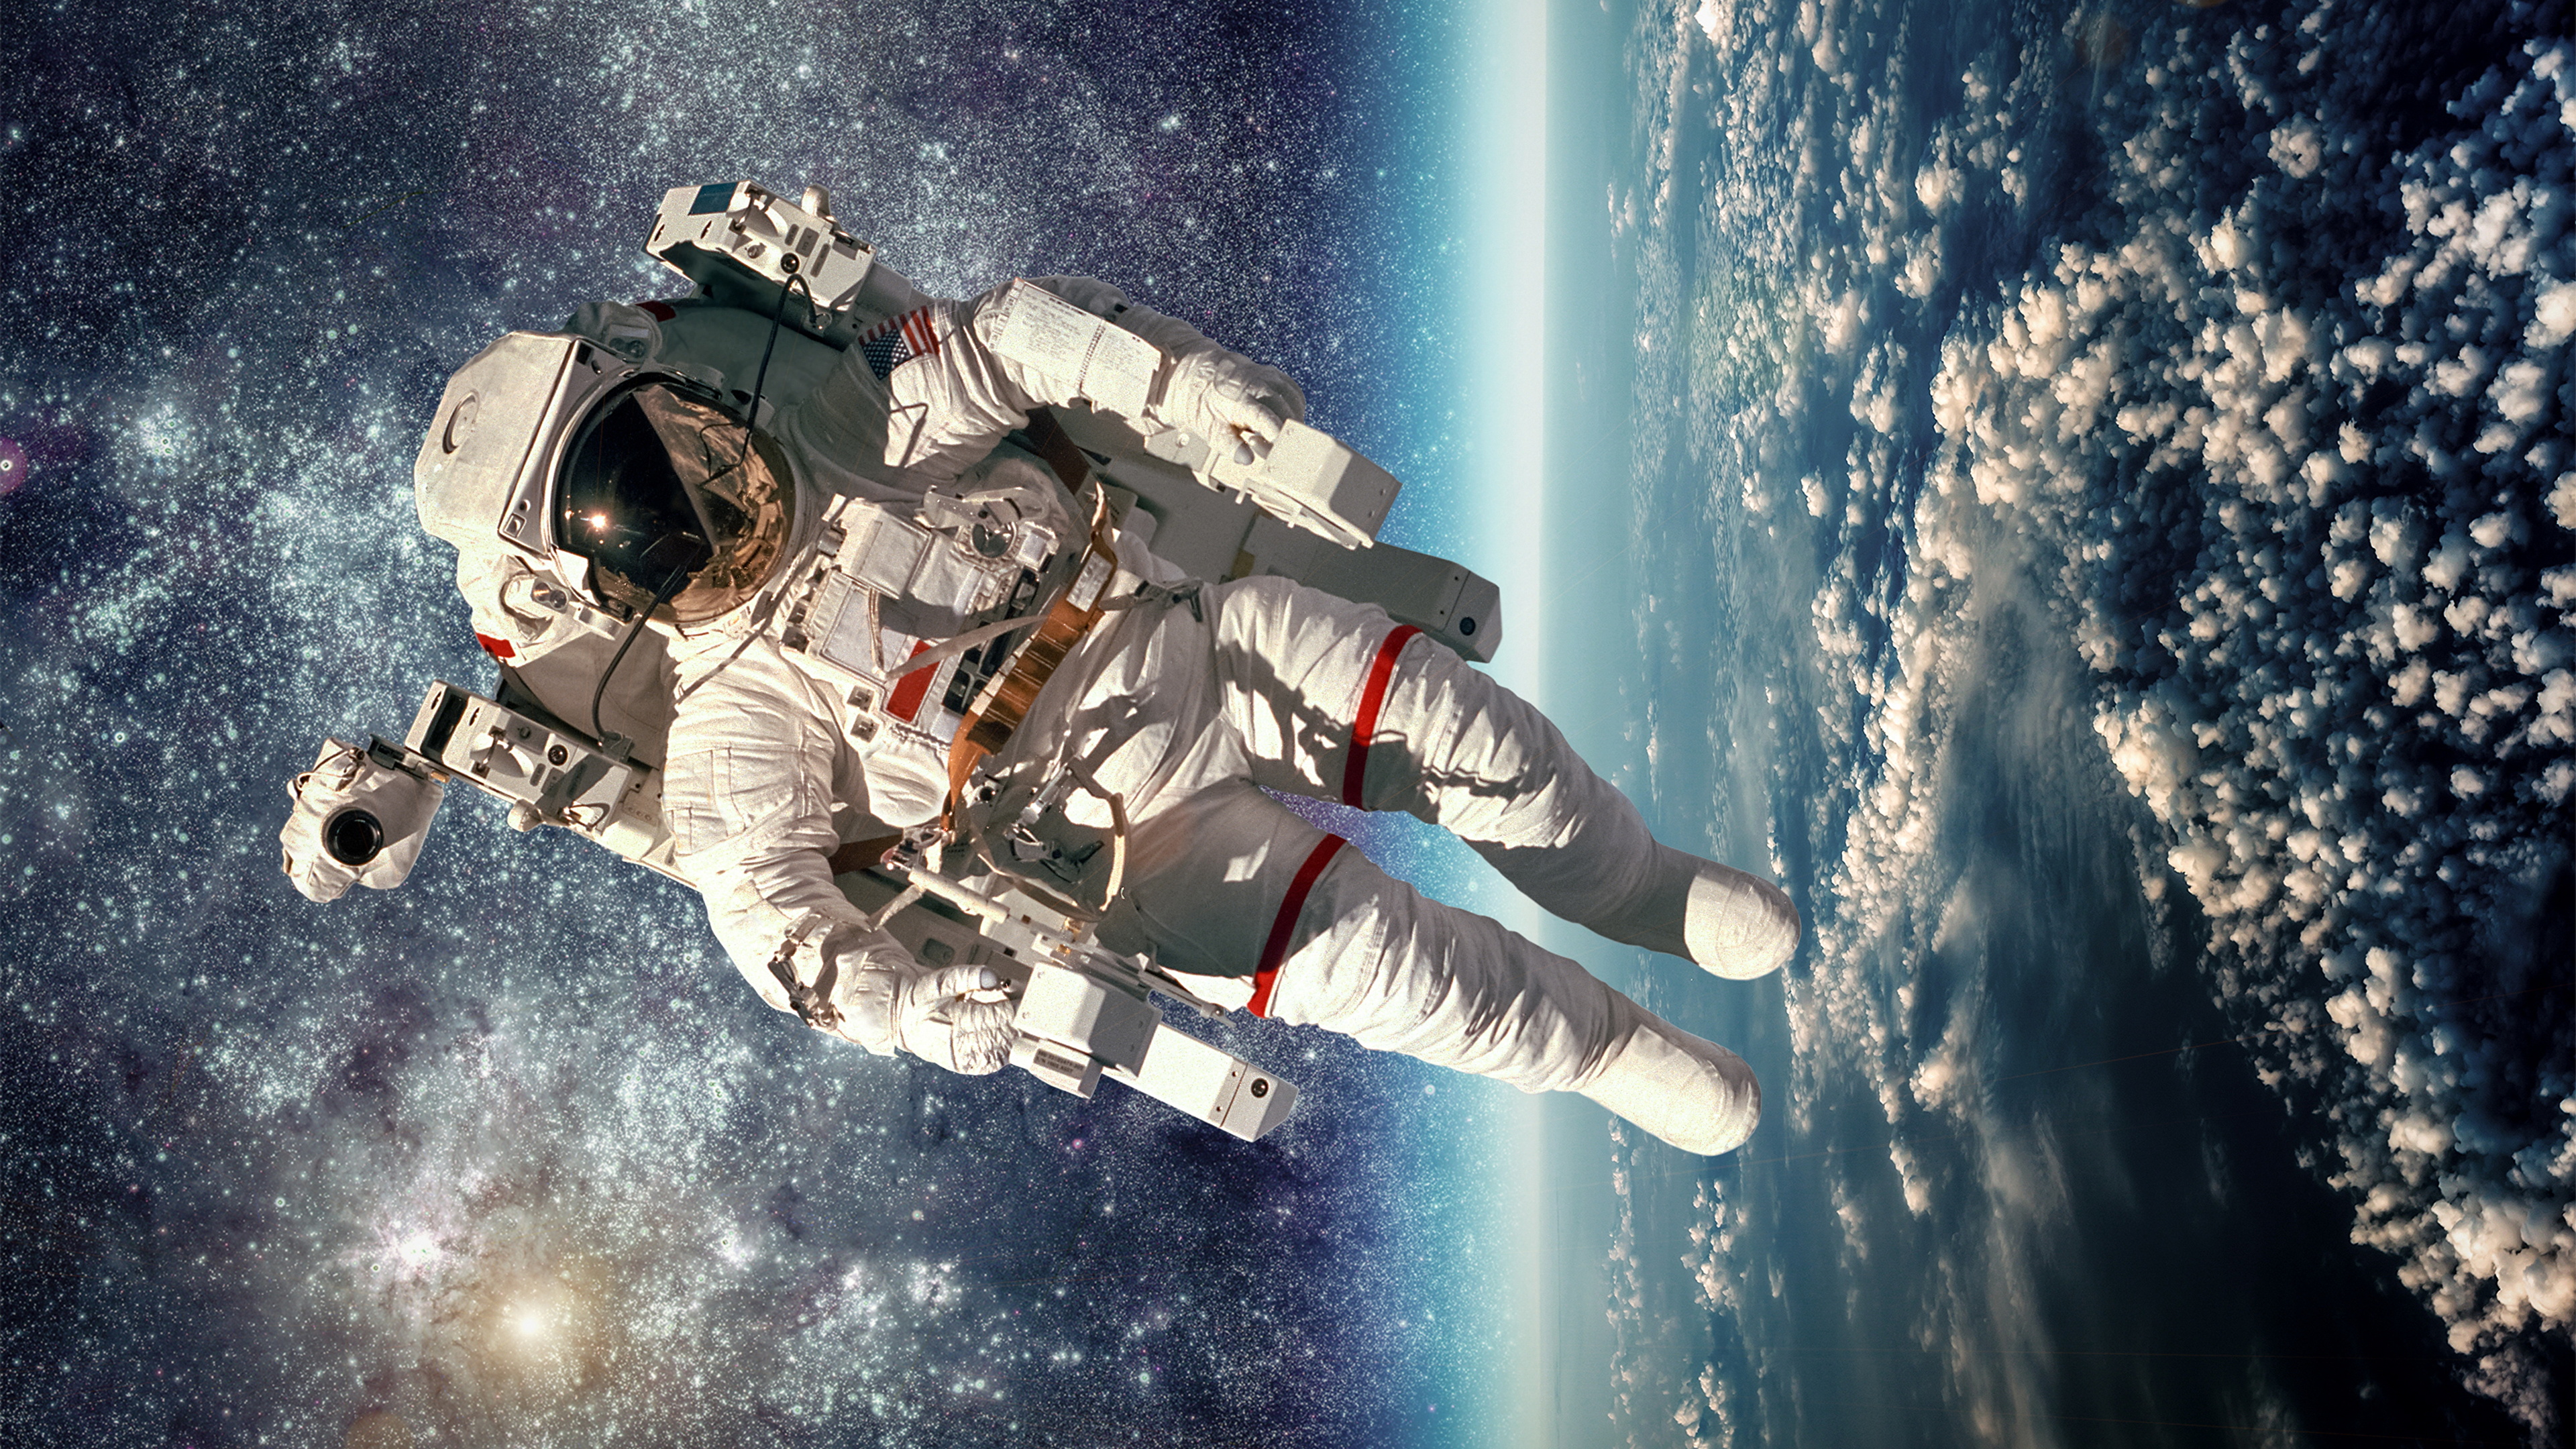 Fondos de Pantalla 3840x2160 Astronautas Americano Сosmos descargar imagenes